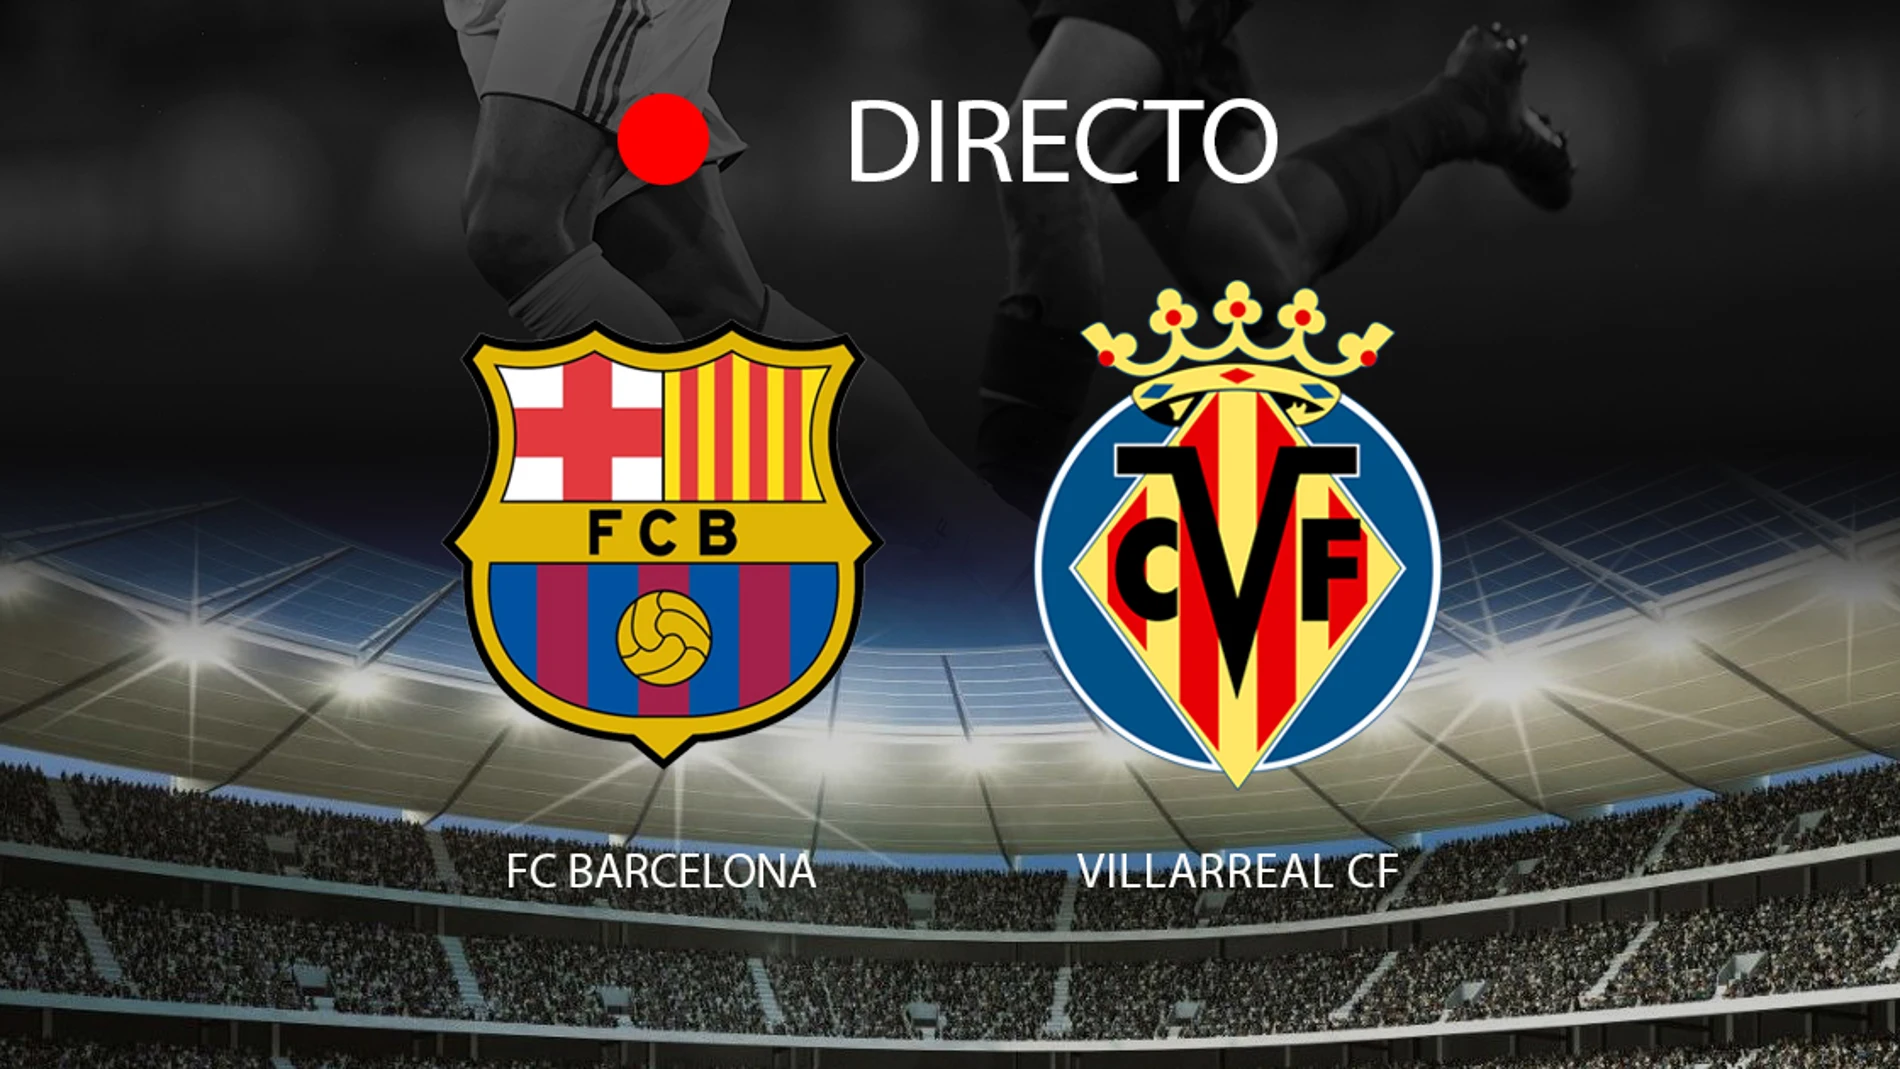 FC Barcelona 2-0 Villarreal CF: resumen y resultado del partido hoy LaLiga de fútbol profesional